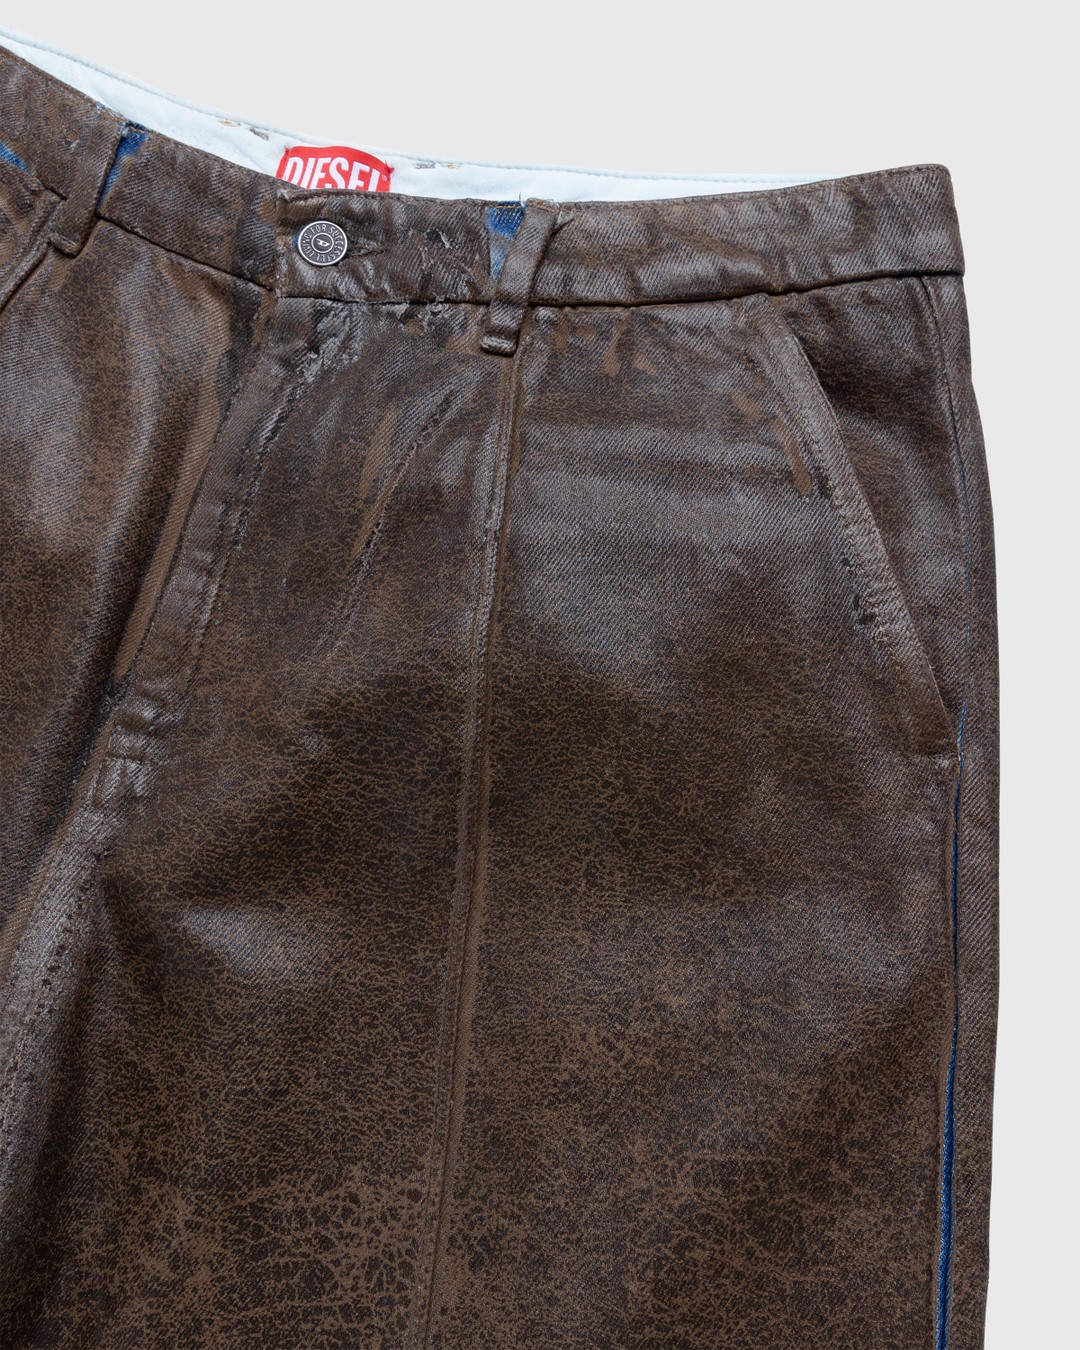 Diesel – Chino Work Jeans Aztec - Pants - Beige - Image 3